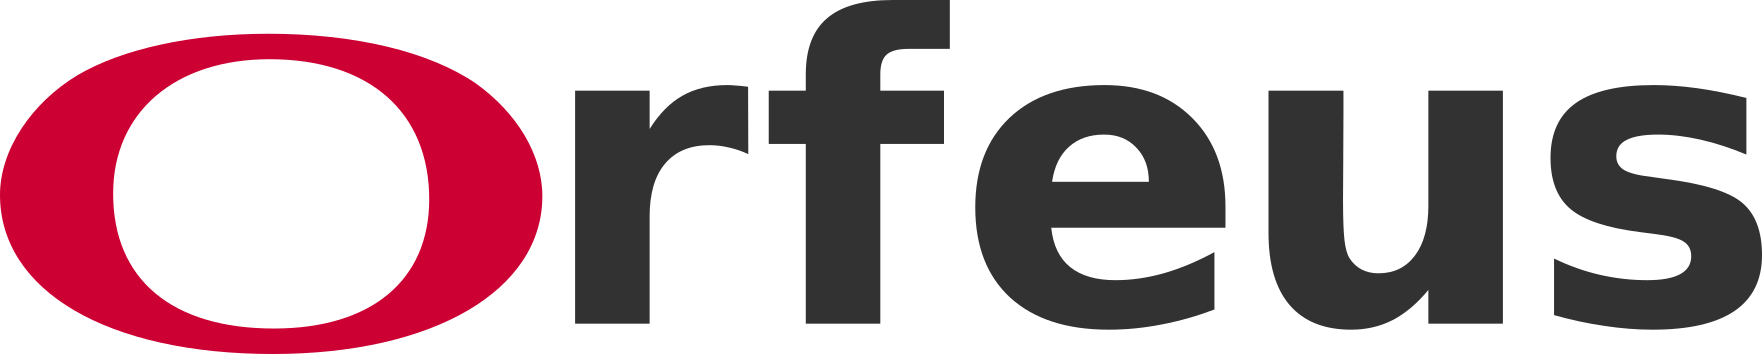 Orfeus logo